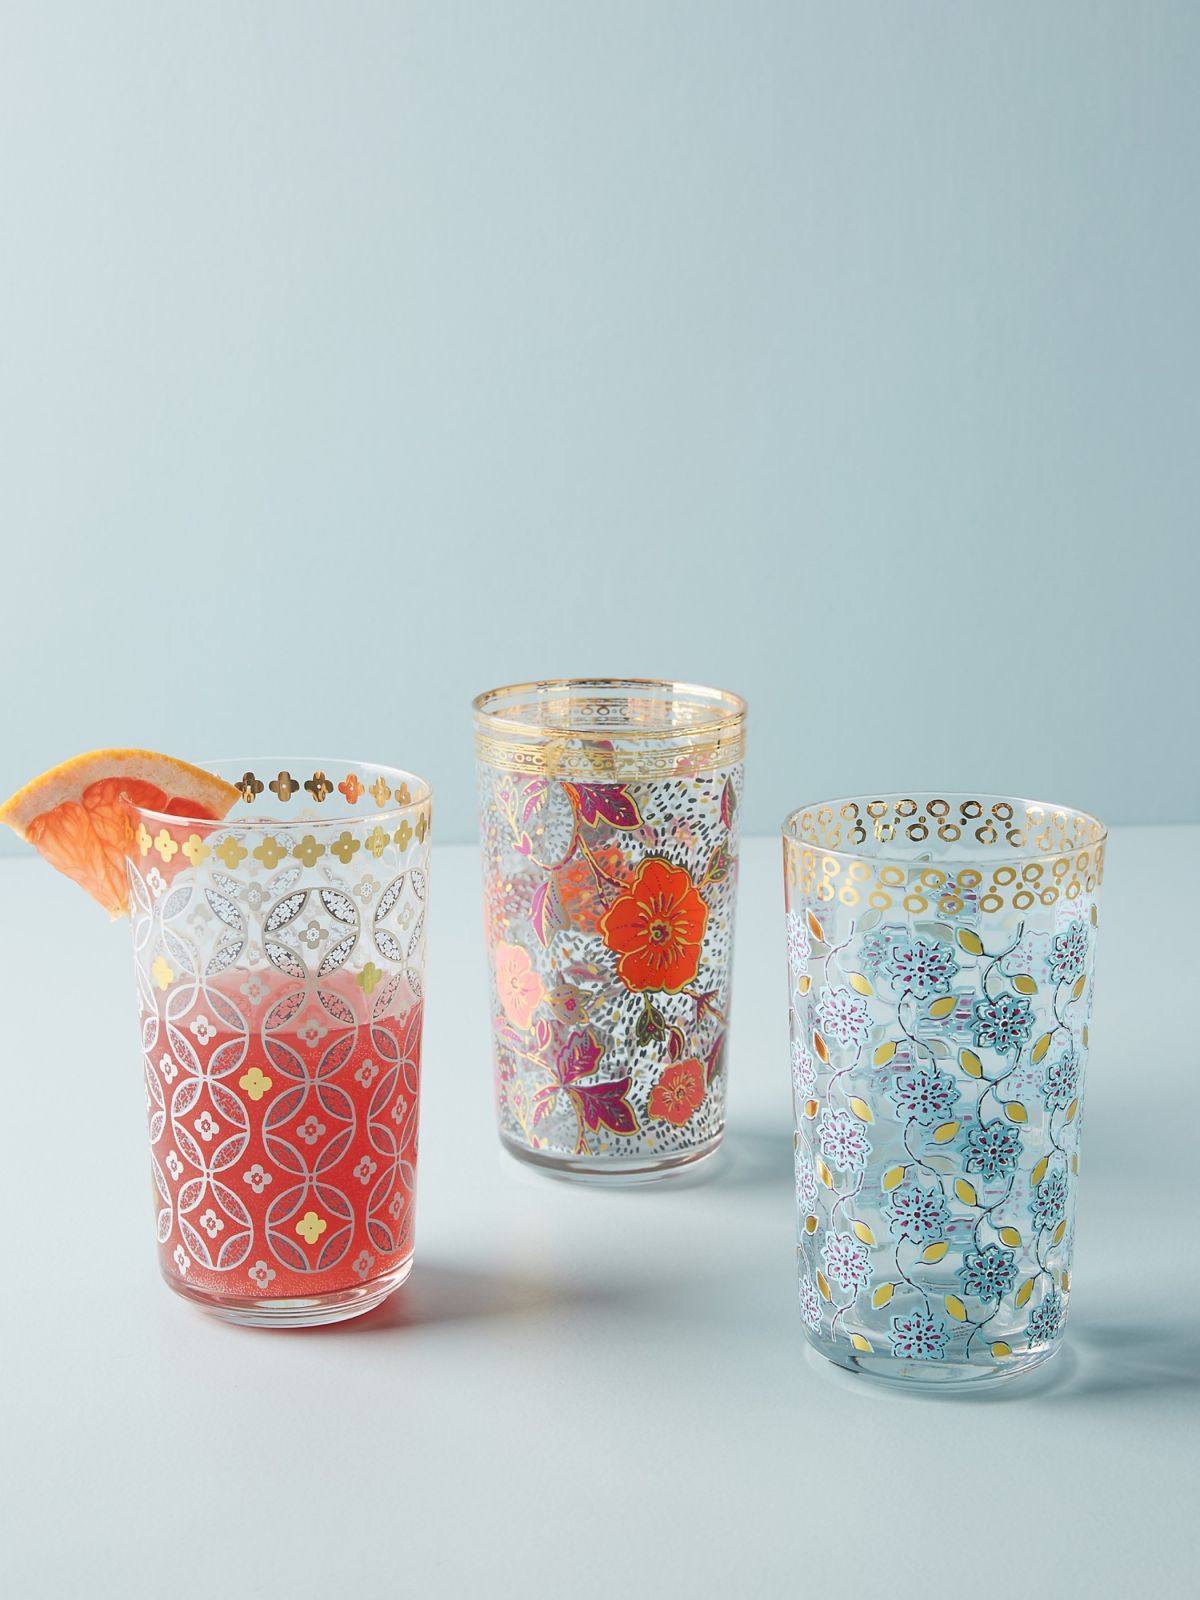  כוס זכוכית עם עיטורי פרחים וזהב של ANTHROPOLOGIE